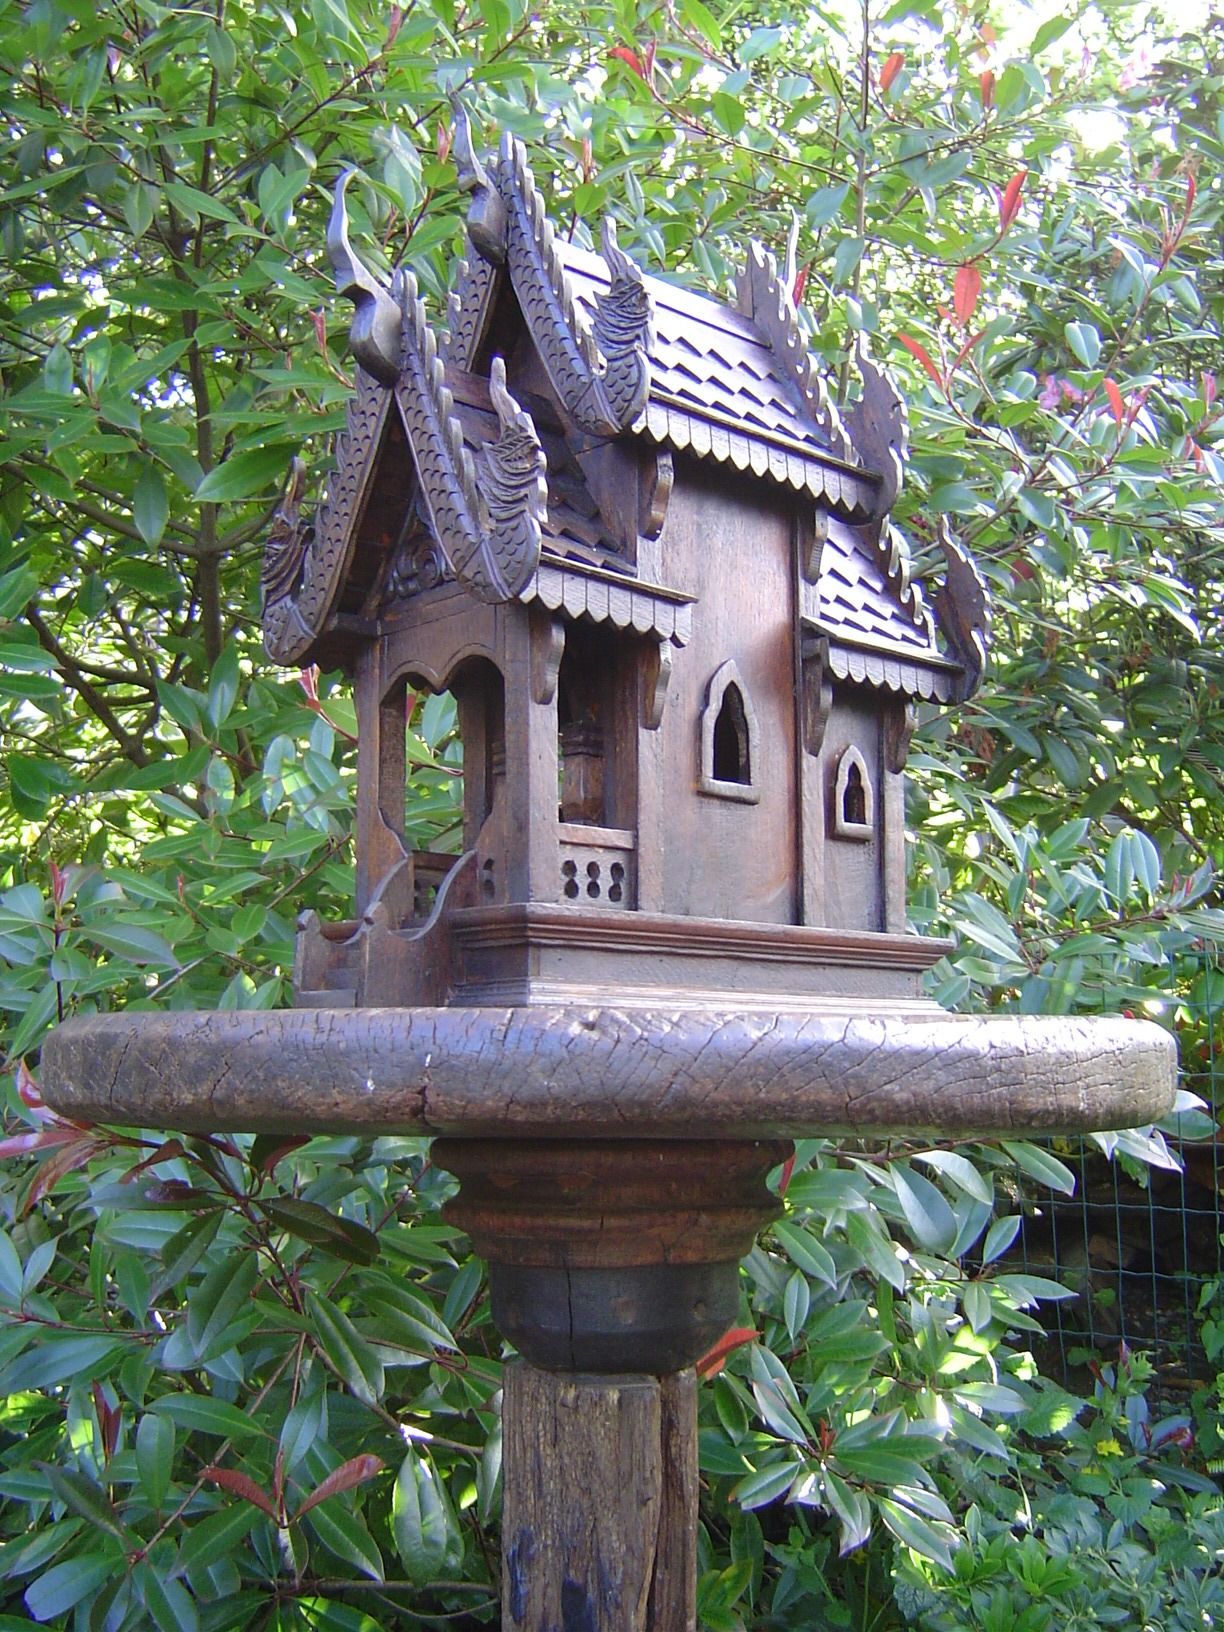 Spirit house in the garden | Spirit Houses | Pinterest | Gardens ...